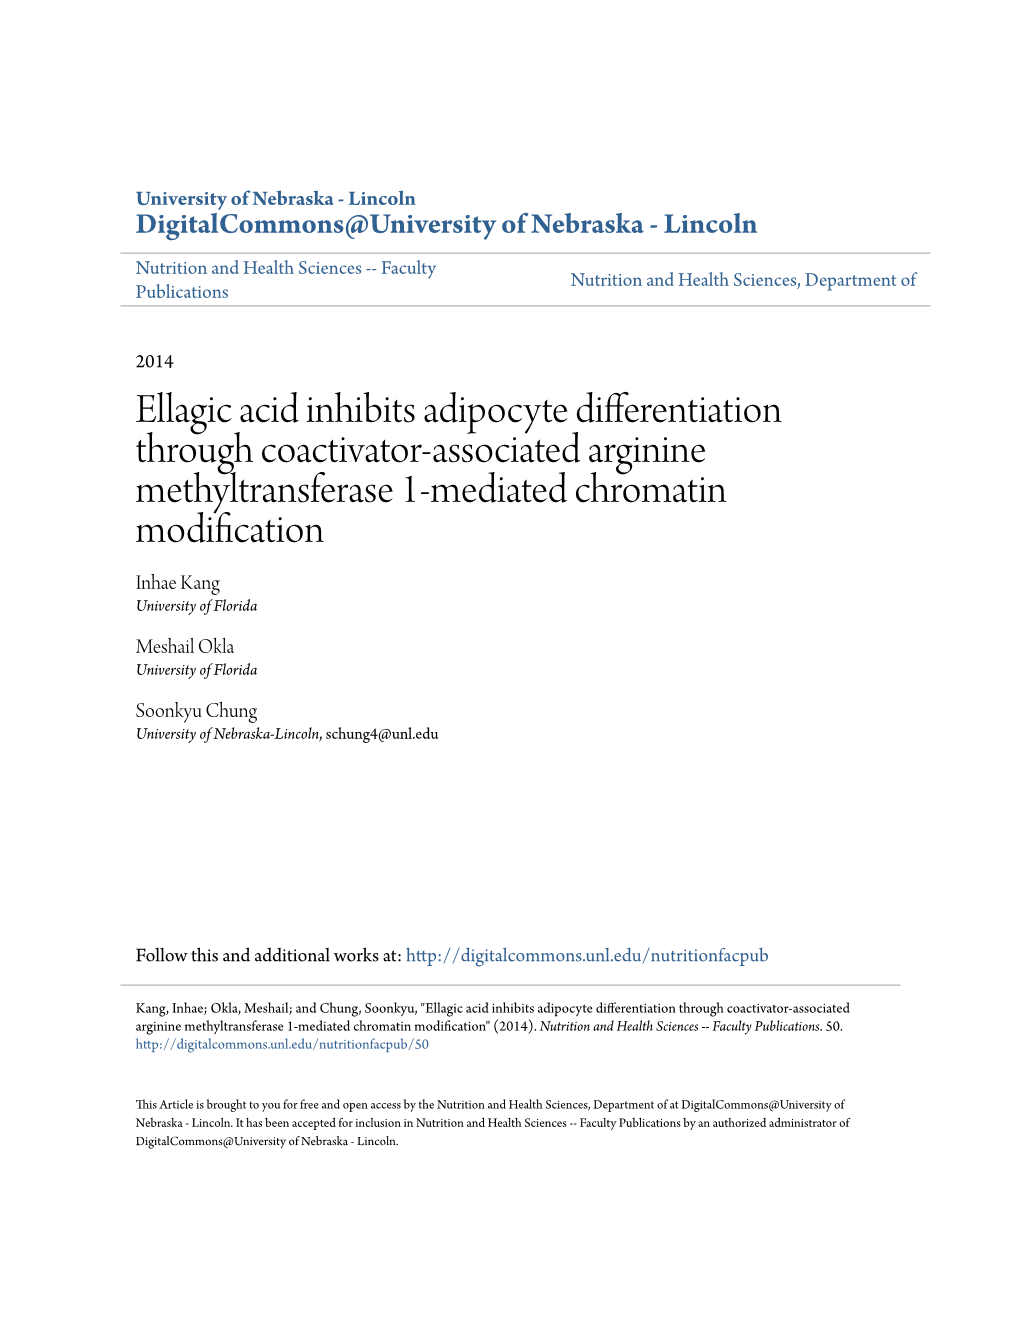 Ellagic Acid Inhibits Adipocyte Differentiation Through Coactivator